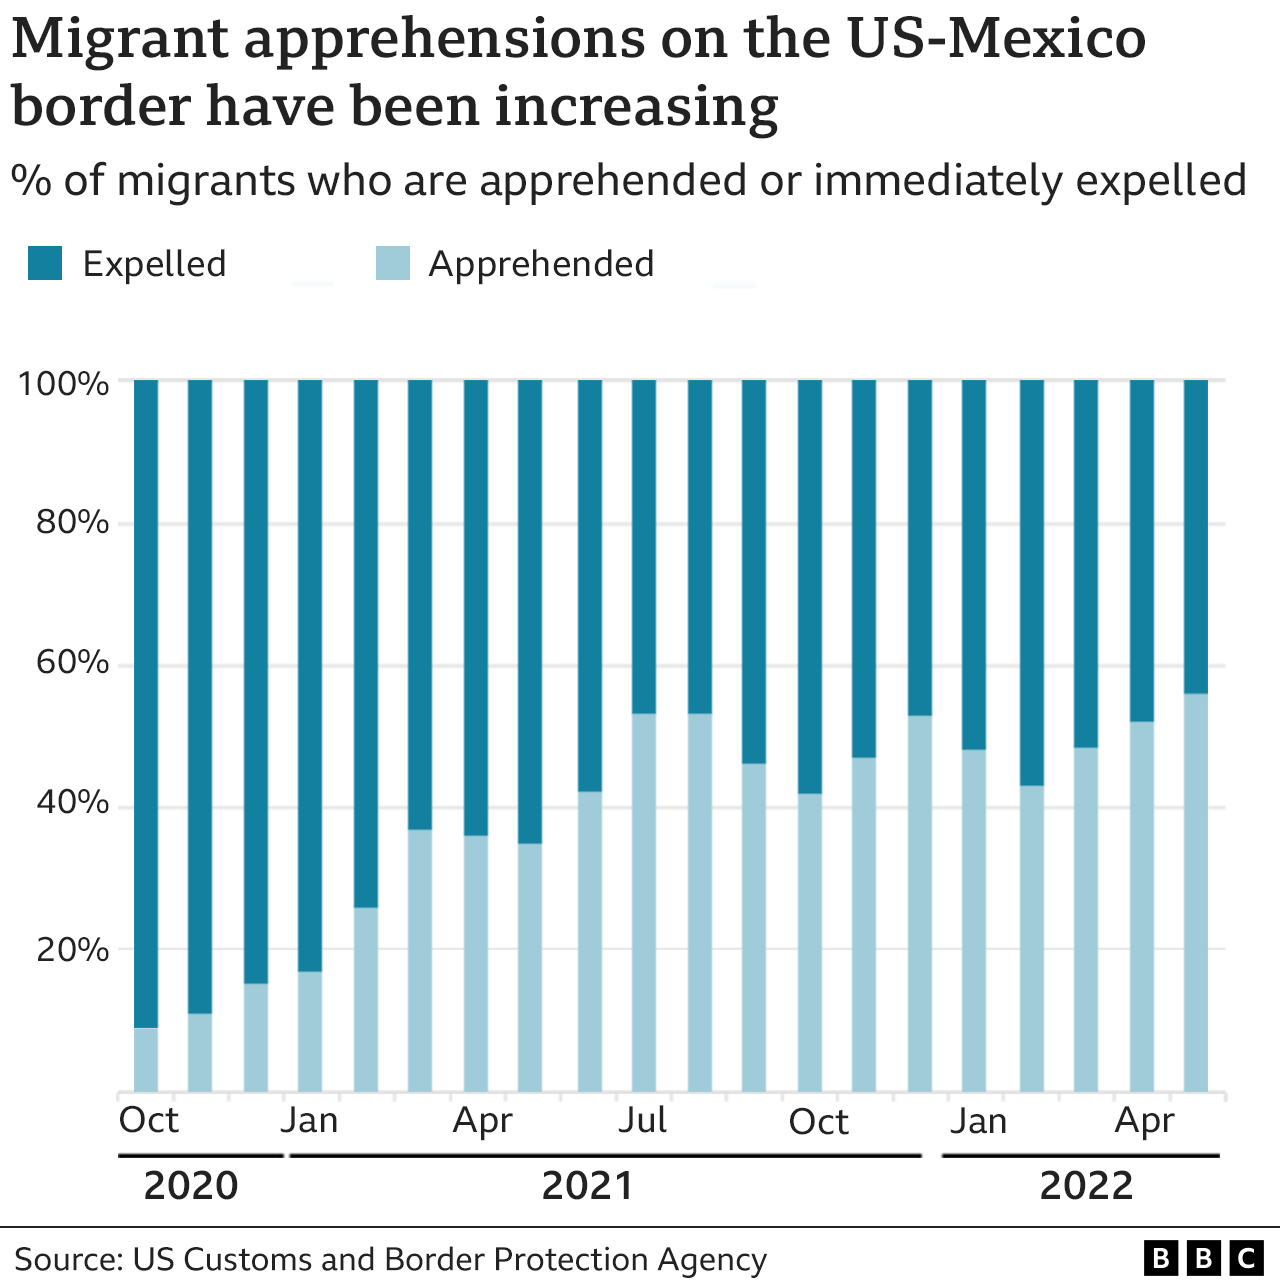 Migrant apprehension versus expulsion